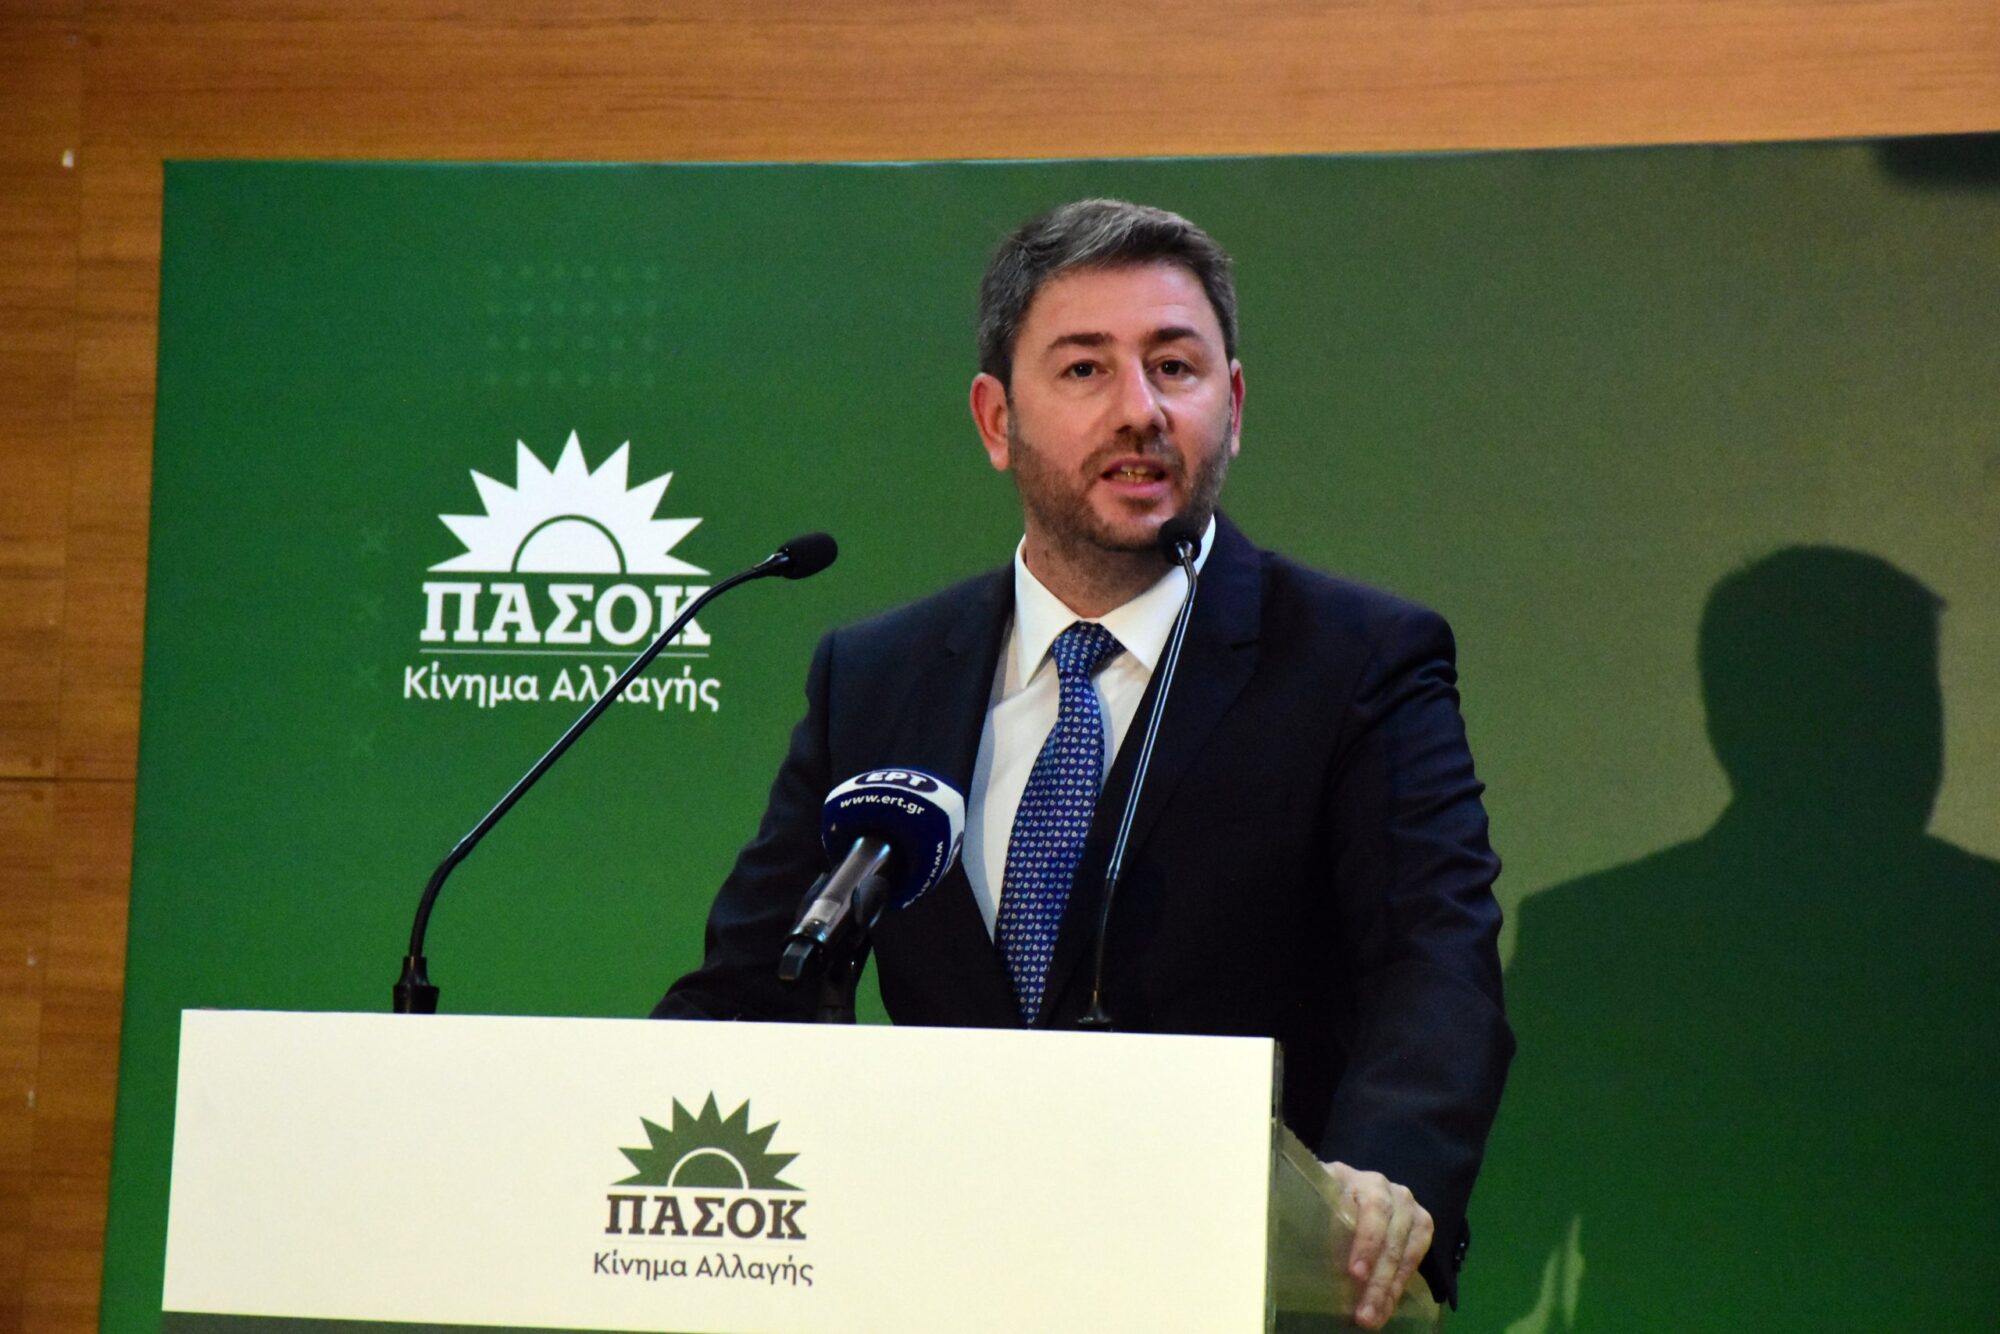 Ν. Ανδρουλάκης: Το ΠΑΣΟΚ είναι απέναντι στις πρακτικές και του Μητσοτάκη και του Τσίπρα